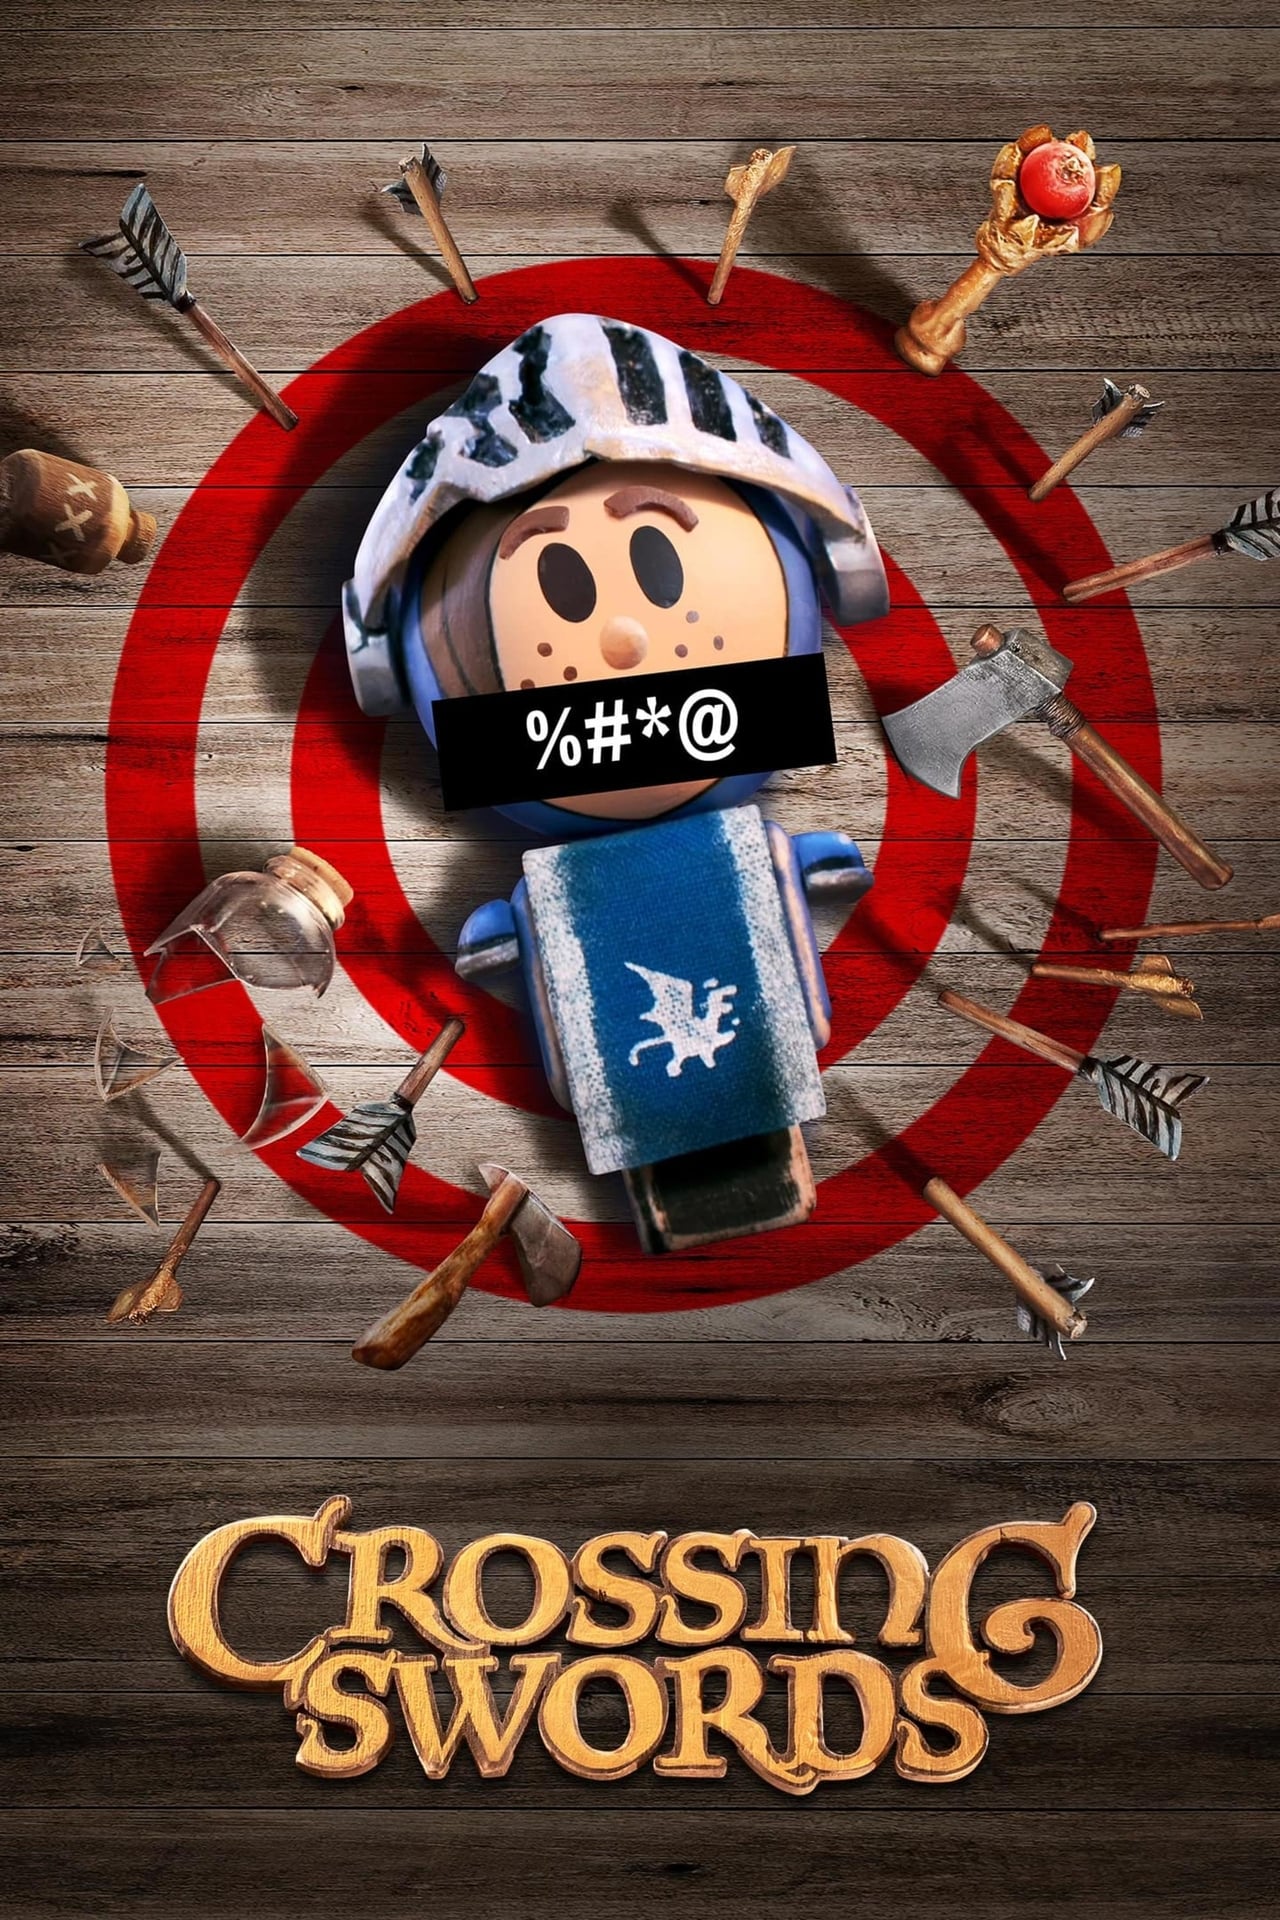 Crossing Swords (season 2)